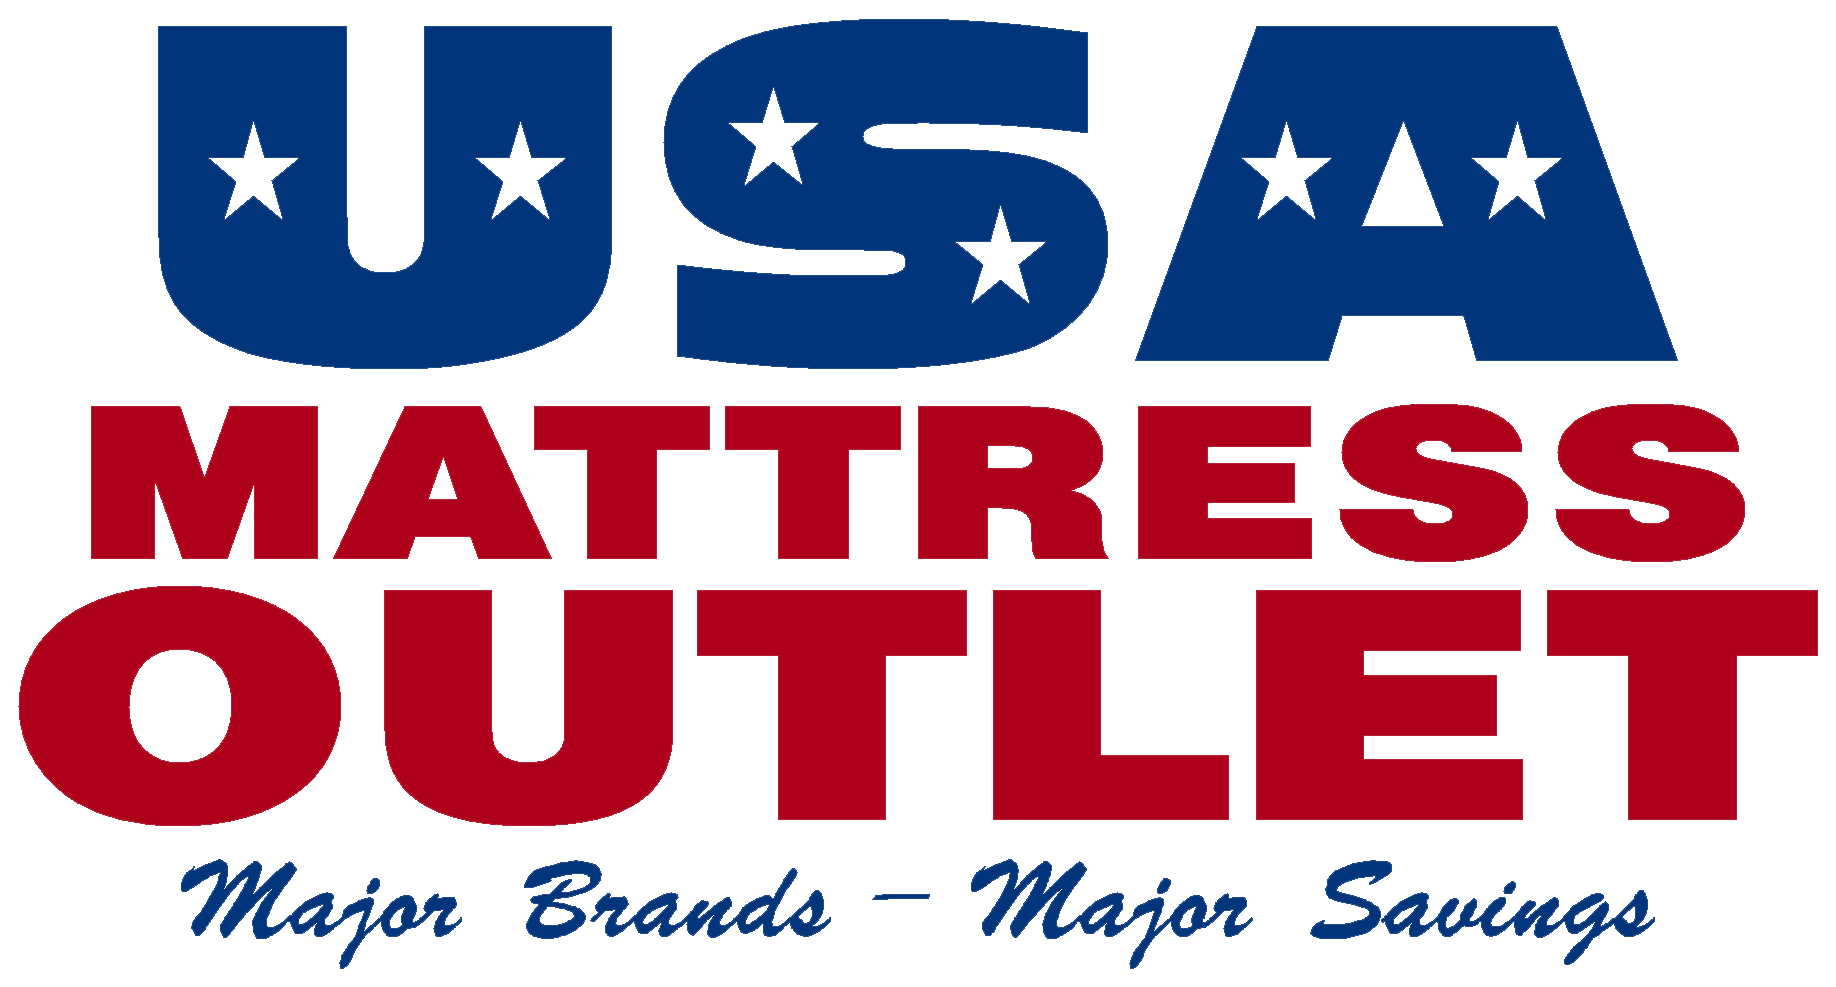 USA Mattress Outlet Sikeston Missouri